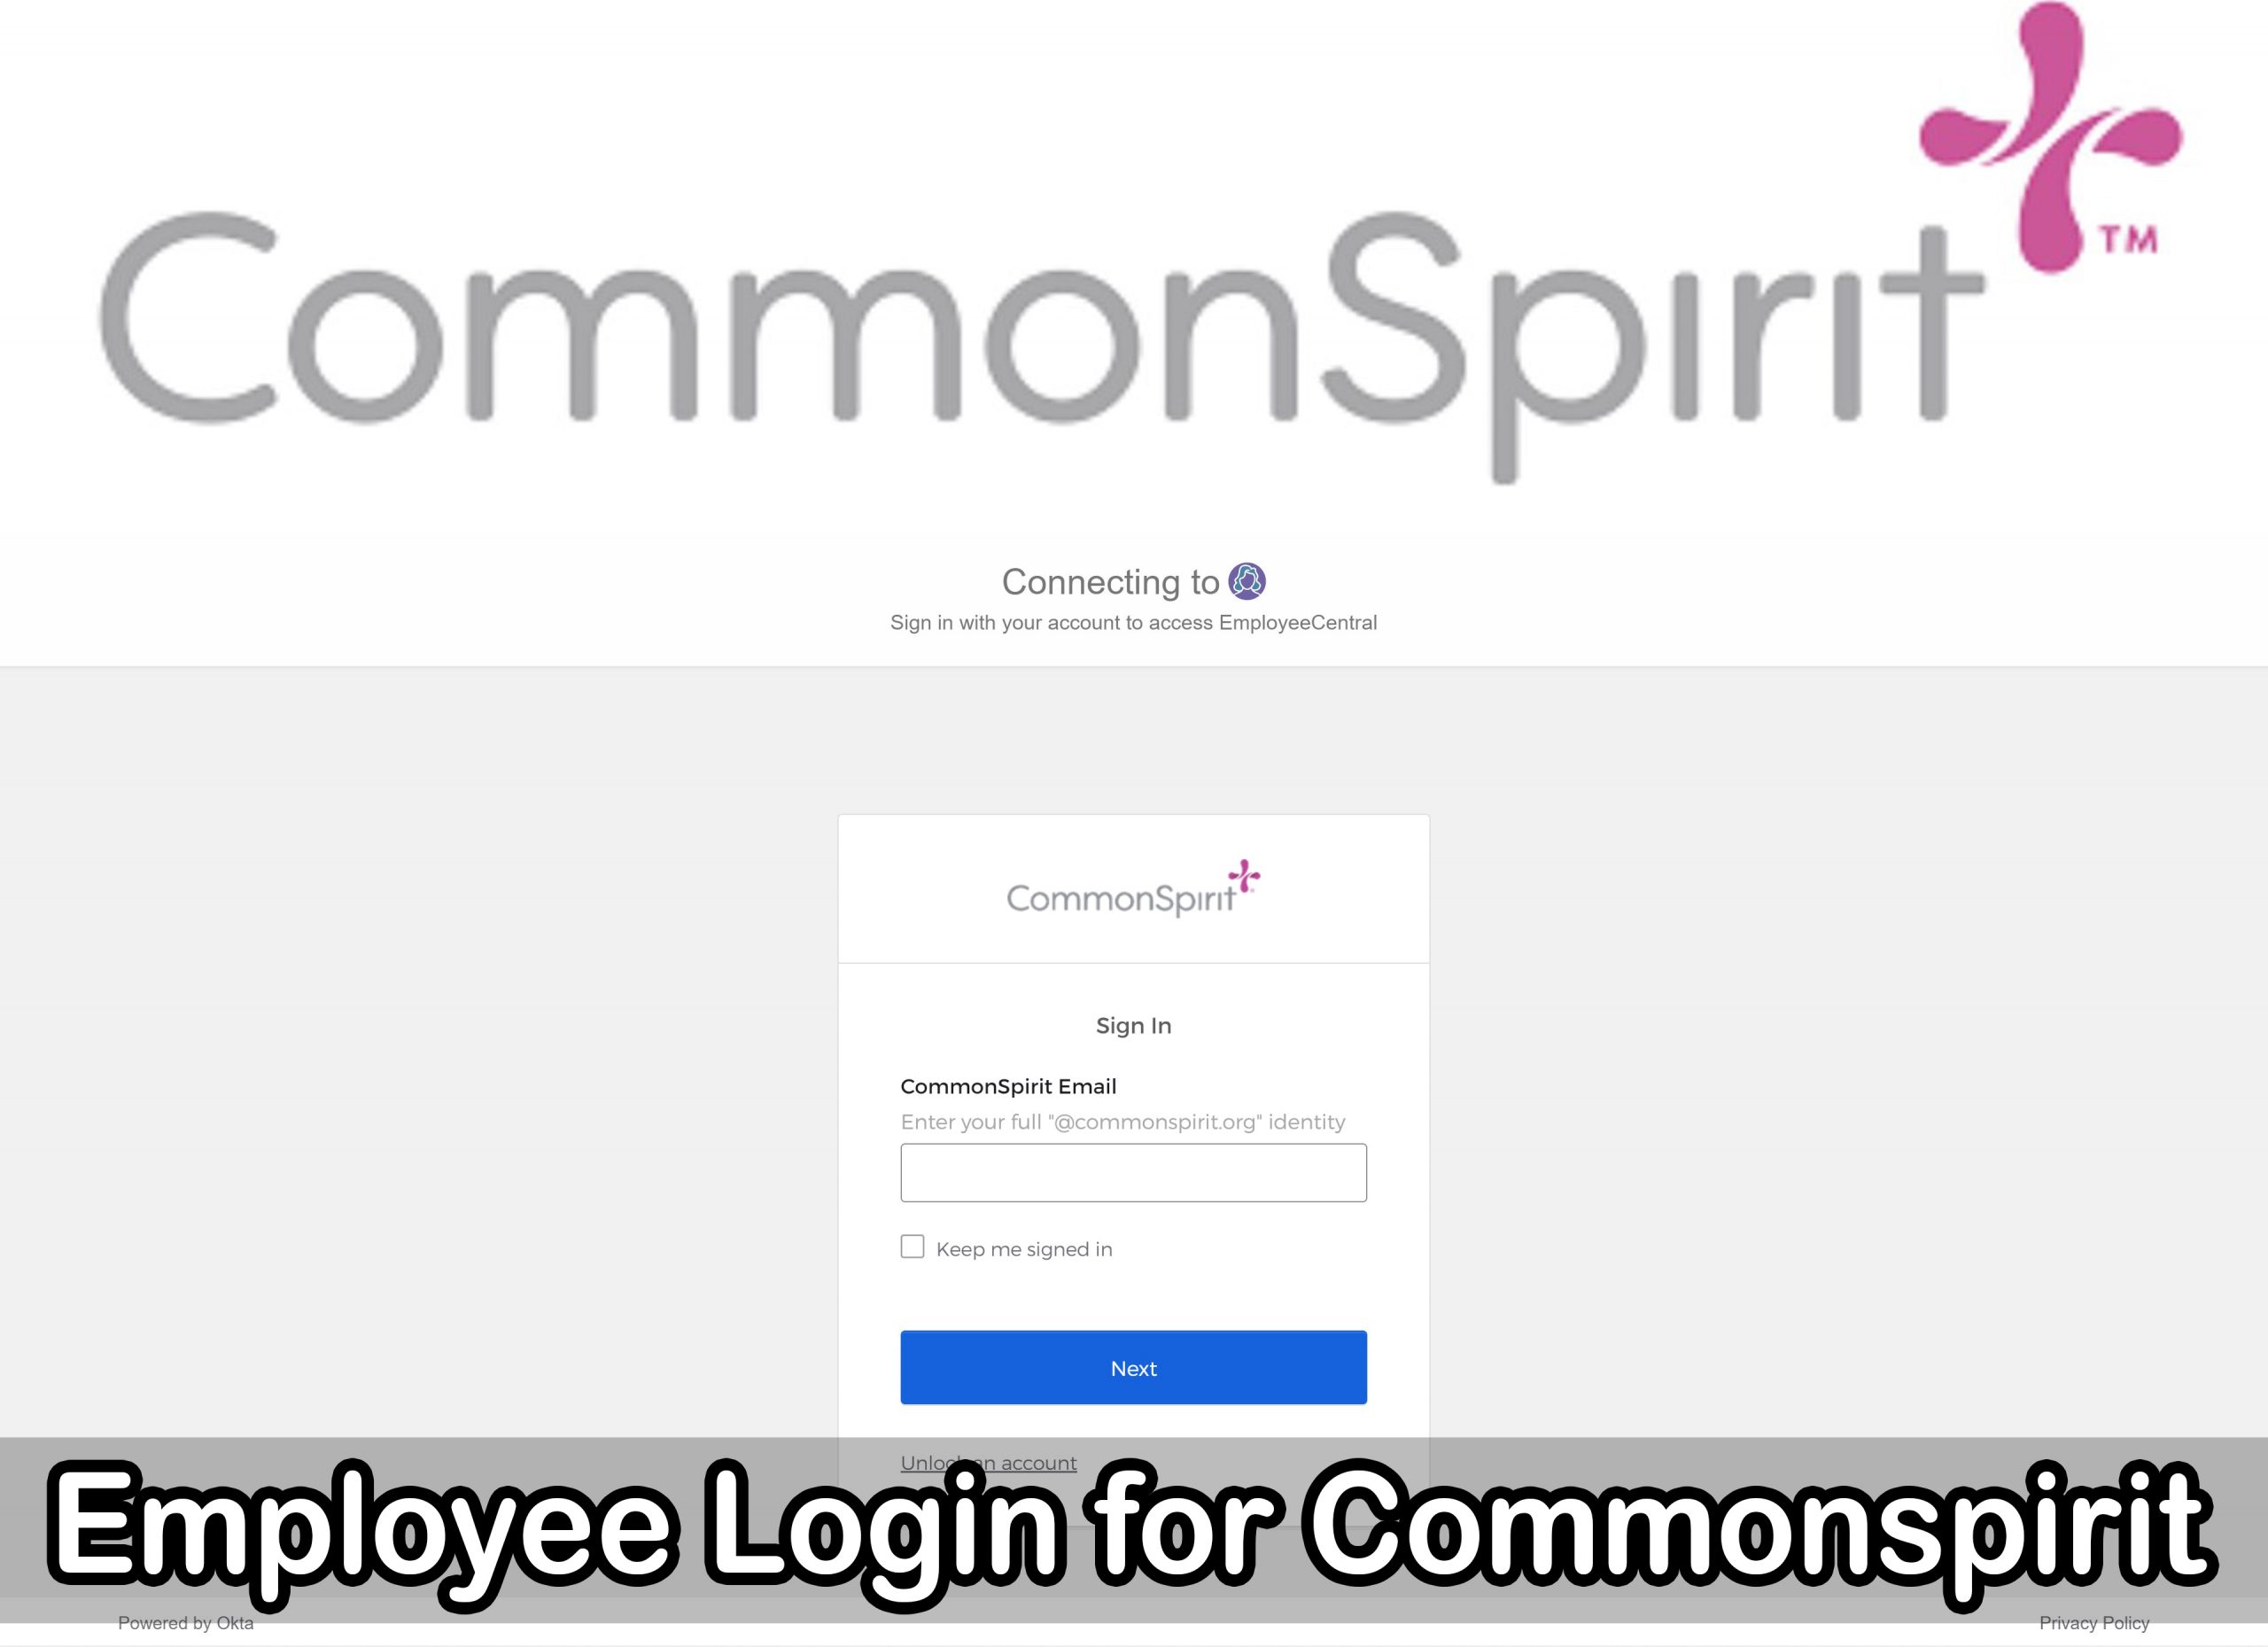 Employee Login for Commonspirit